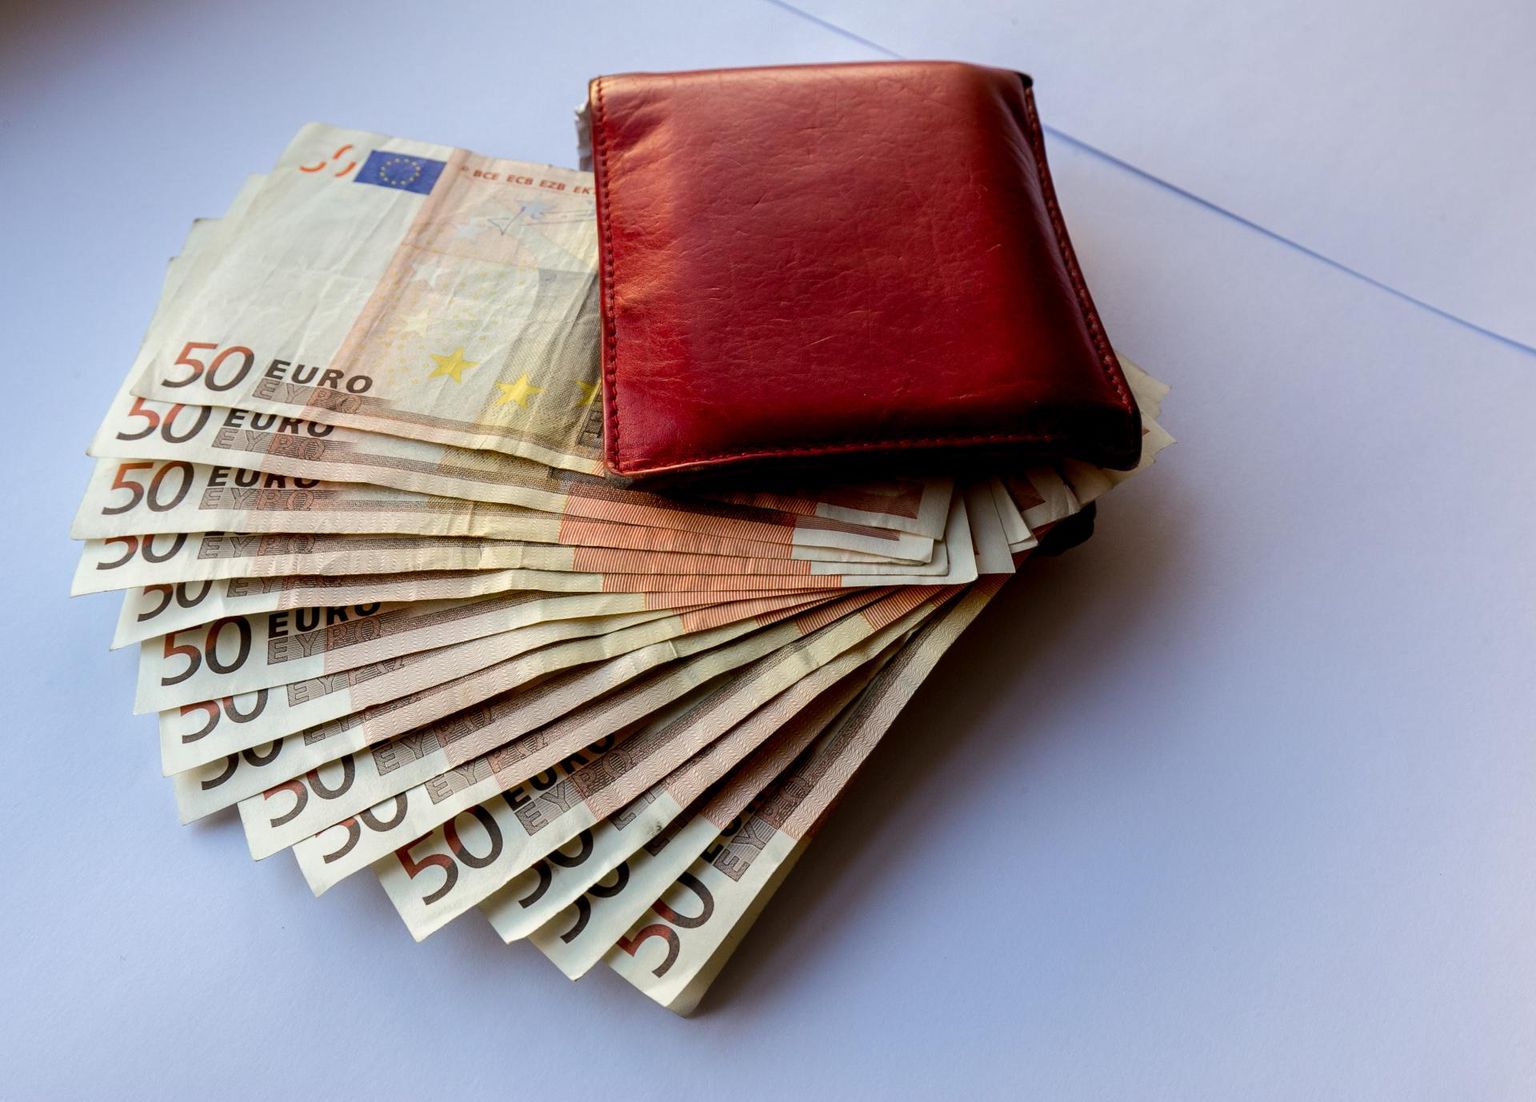 Aprilli keskel avastas Viljandimaal elav naine, et tema pangakontolt on tema teadmata tehtud ülekandeid summas 360 eurot.